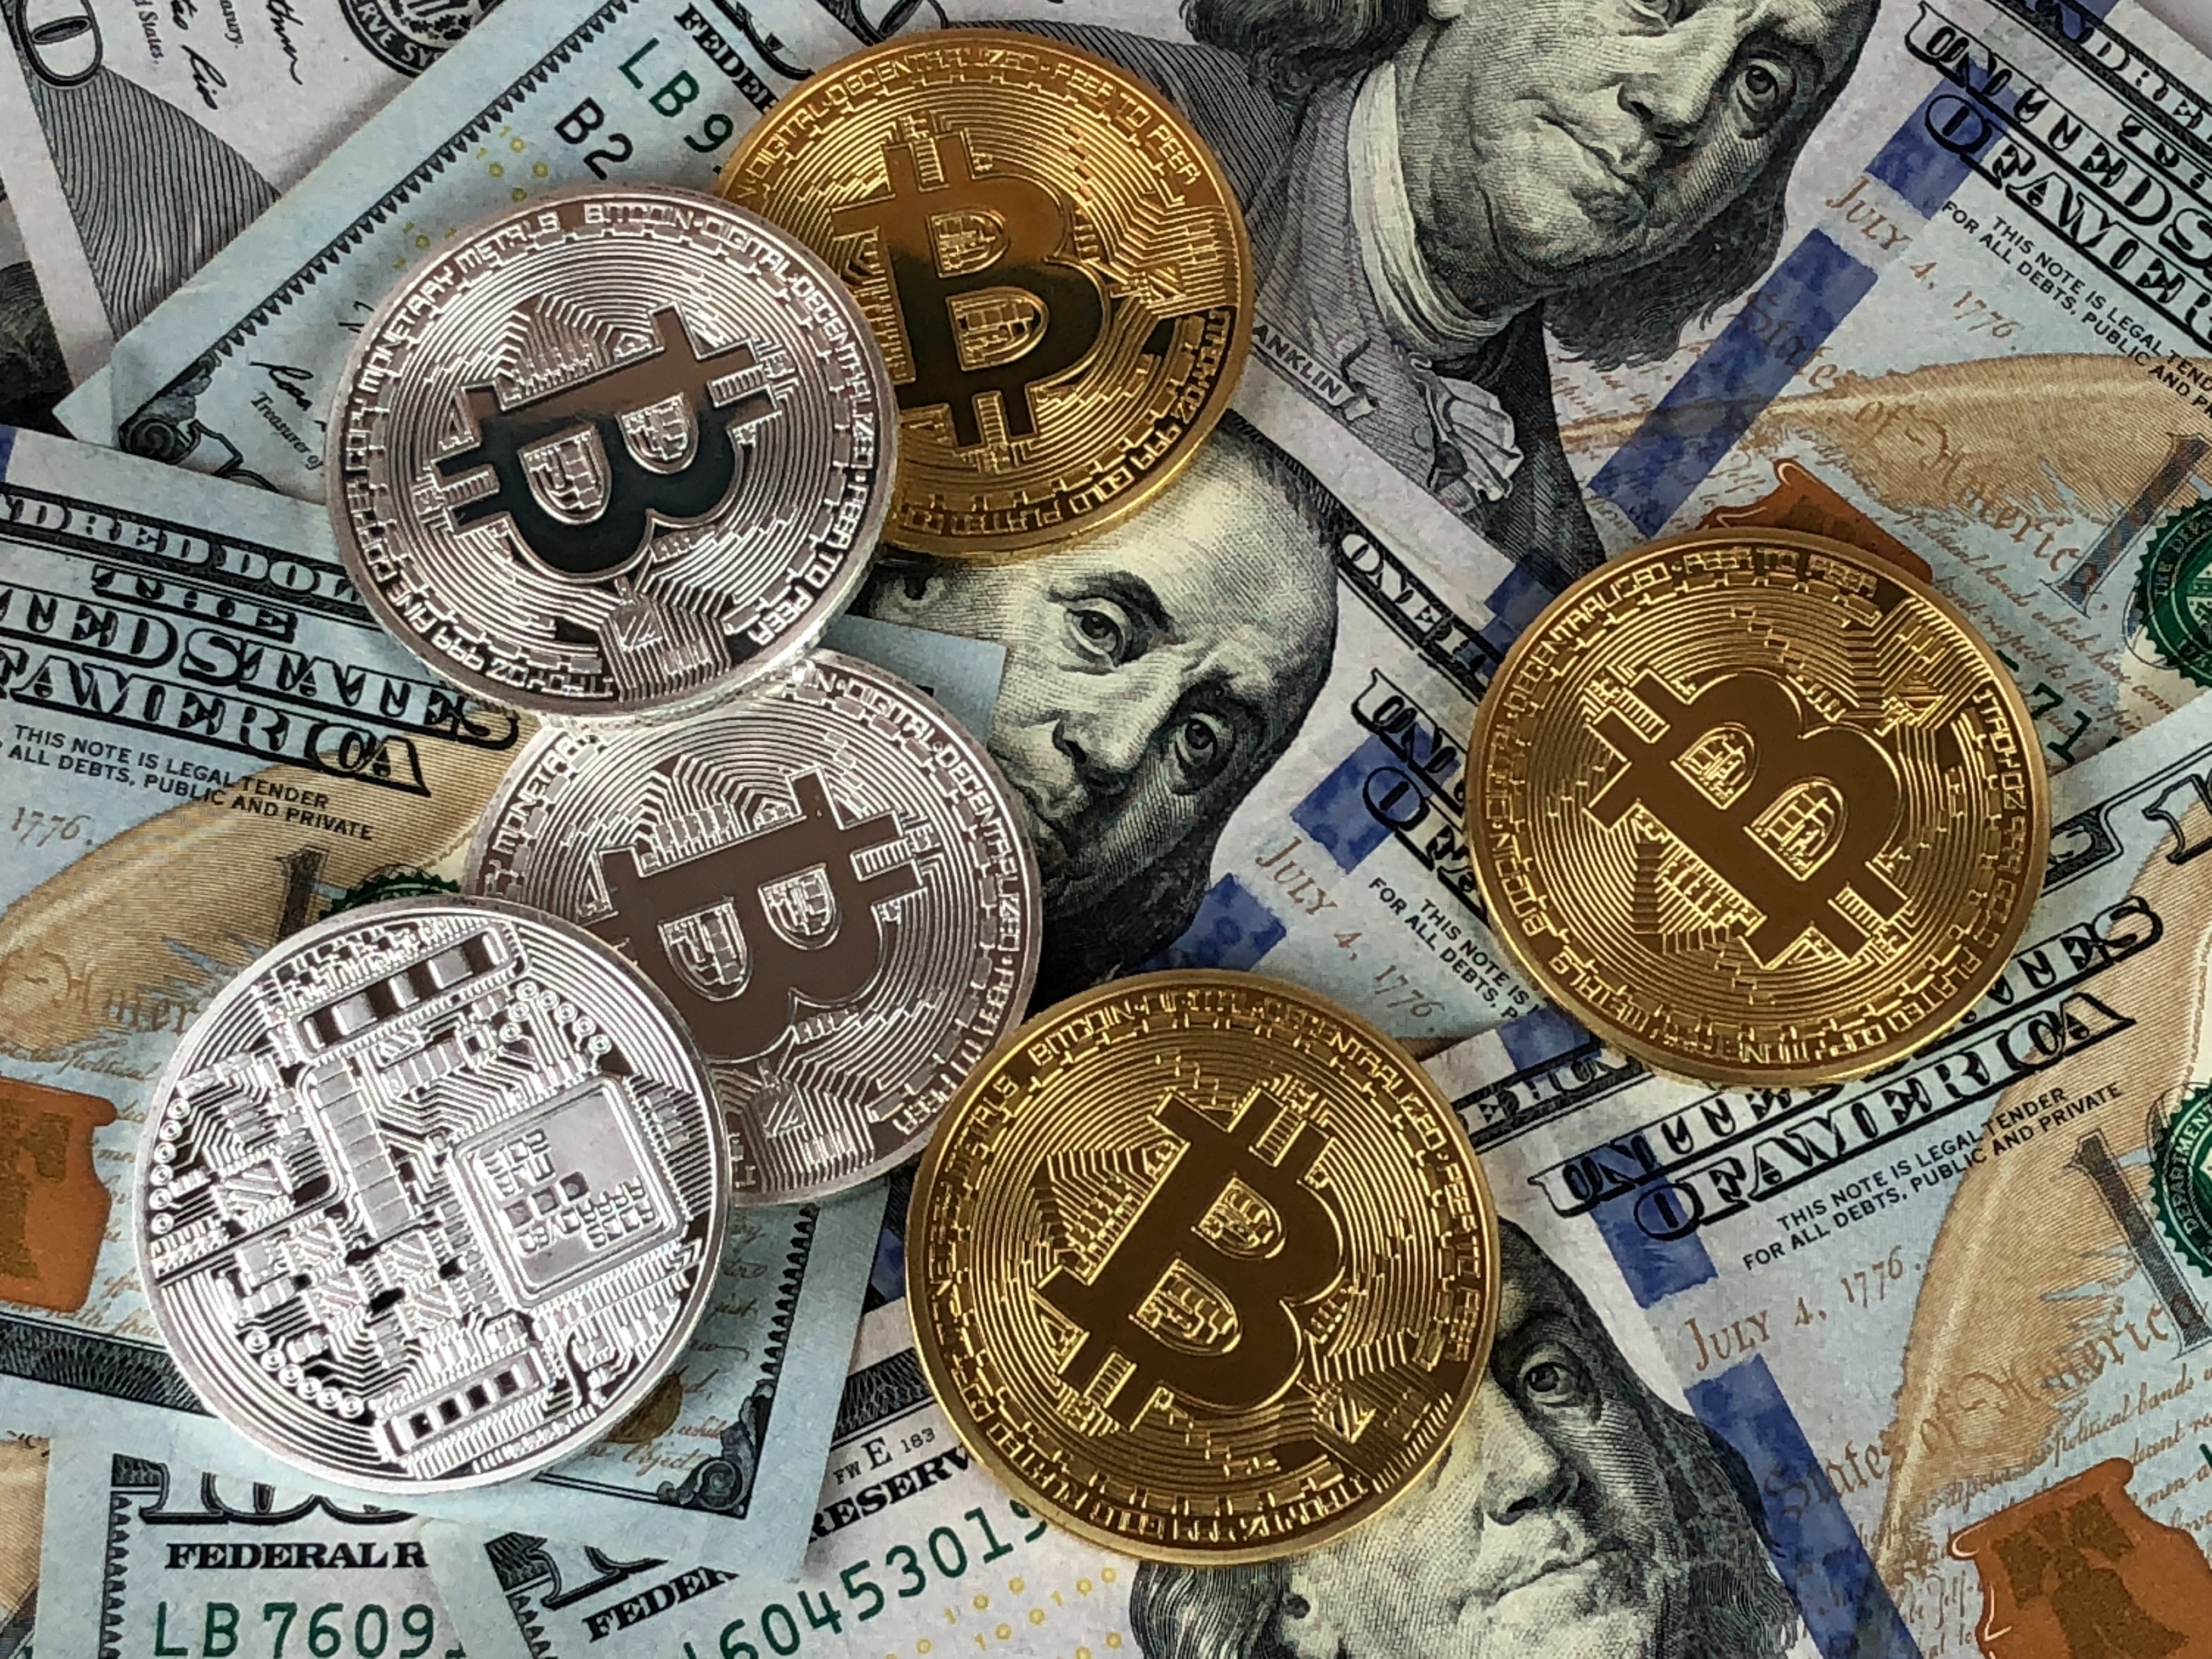 Bitcoin reaches $8K (again)